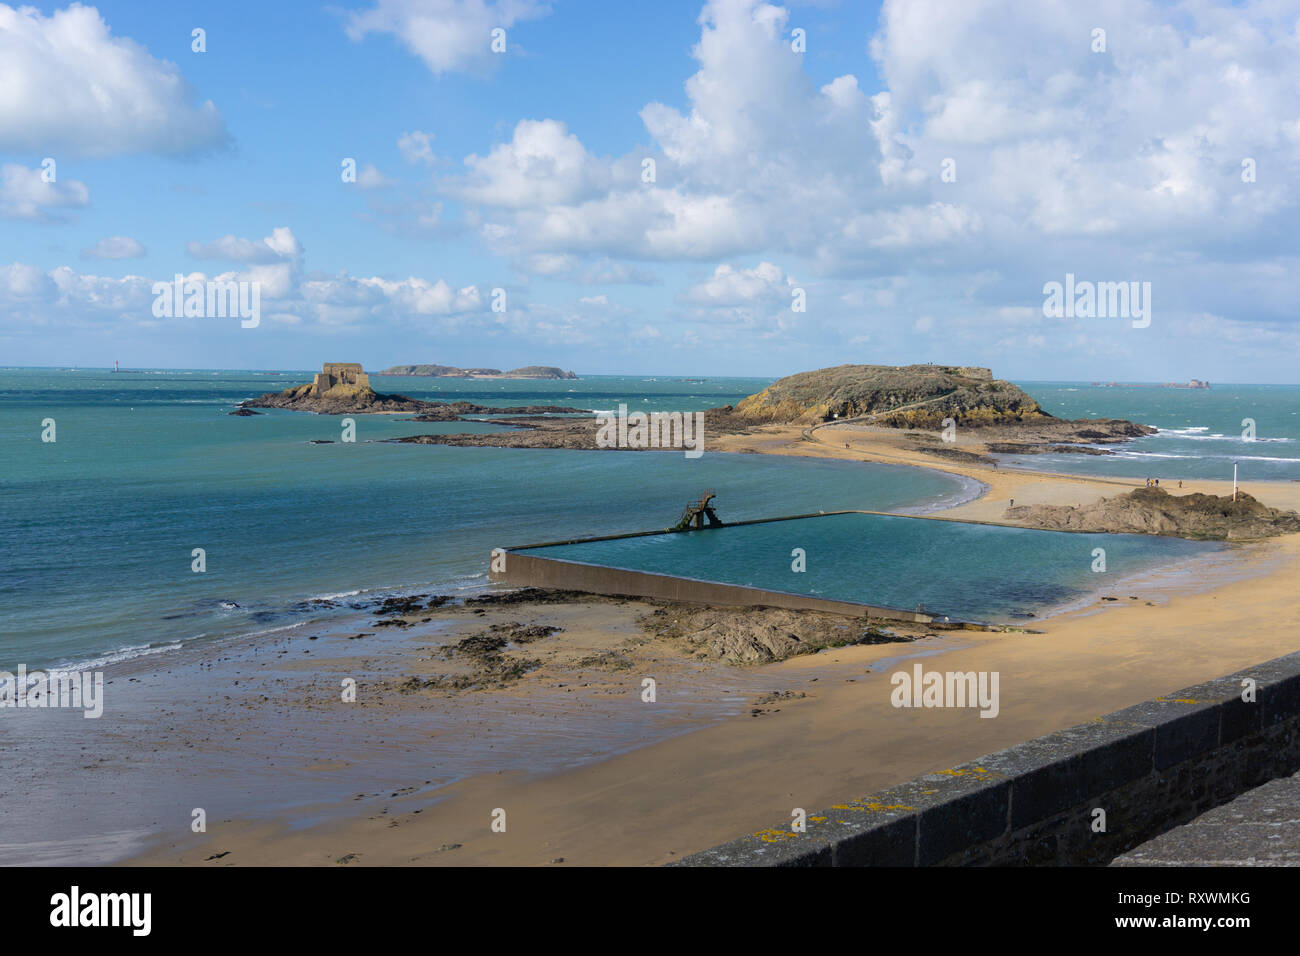 La scena sulla spiaggia di Saint Malo Francia affacciato sulla spiaggia di roccia e fortezze, pool di marea Foto Stock